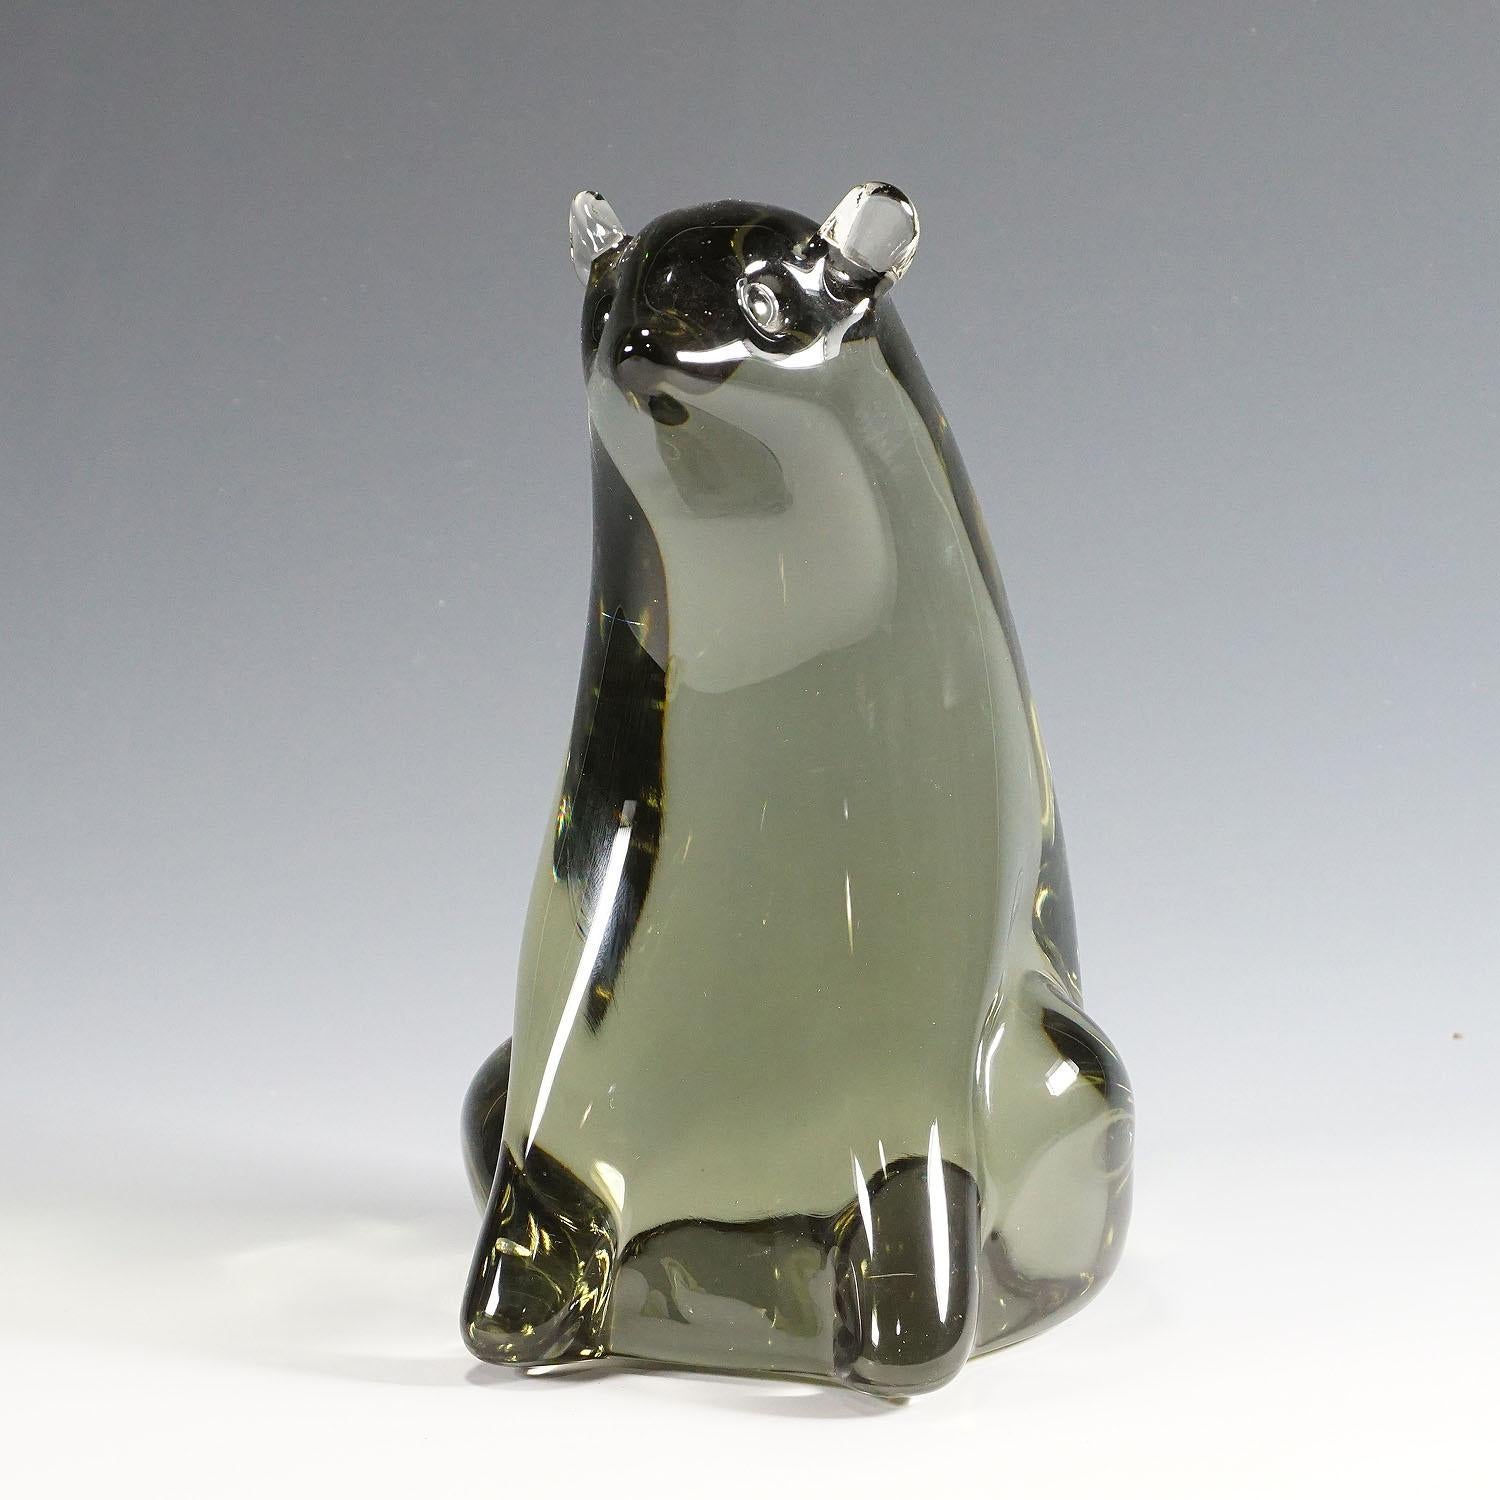 Une puissante sculpture stylisée d'un ours en verre massif gris fumée. Il est fabriqué à la main dans la manufacture de verre Gral, en Allemagne. Le design typique de Livio Seguso dans les années 1970. La base porte la signature incisée de l'artiste